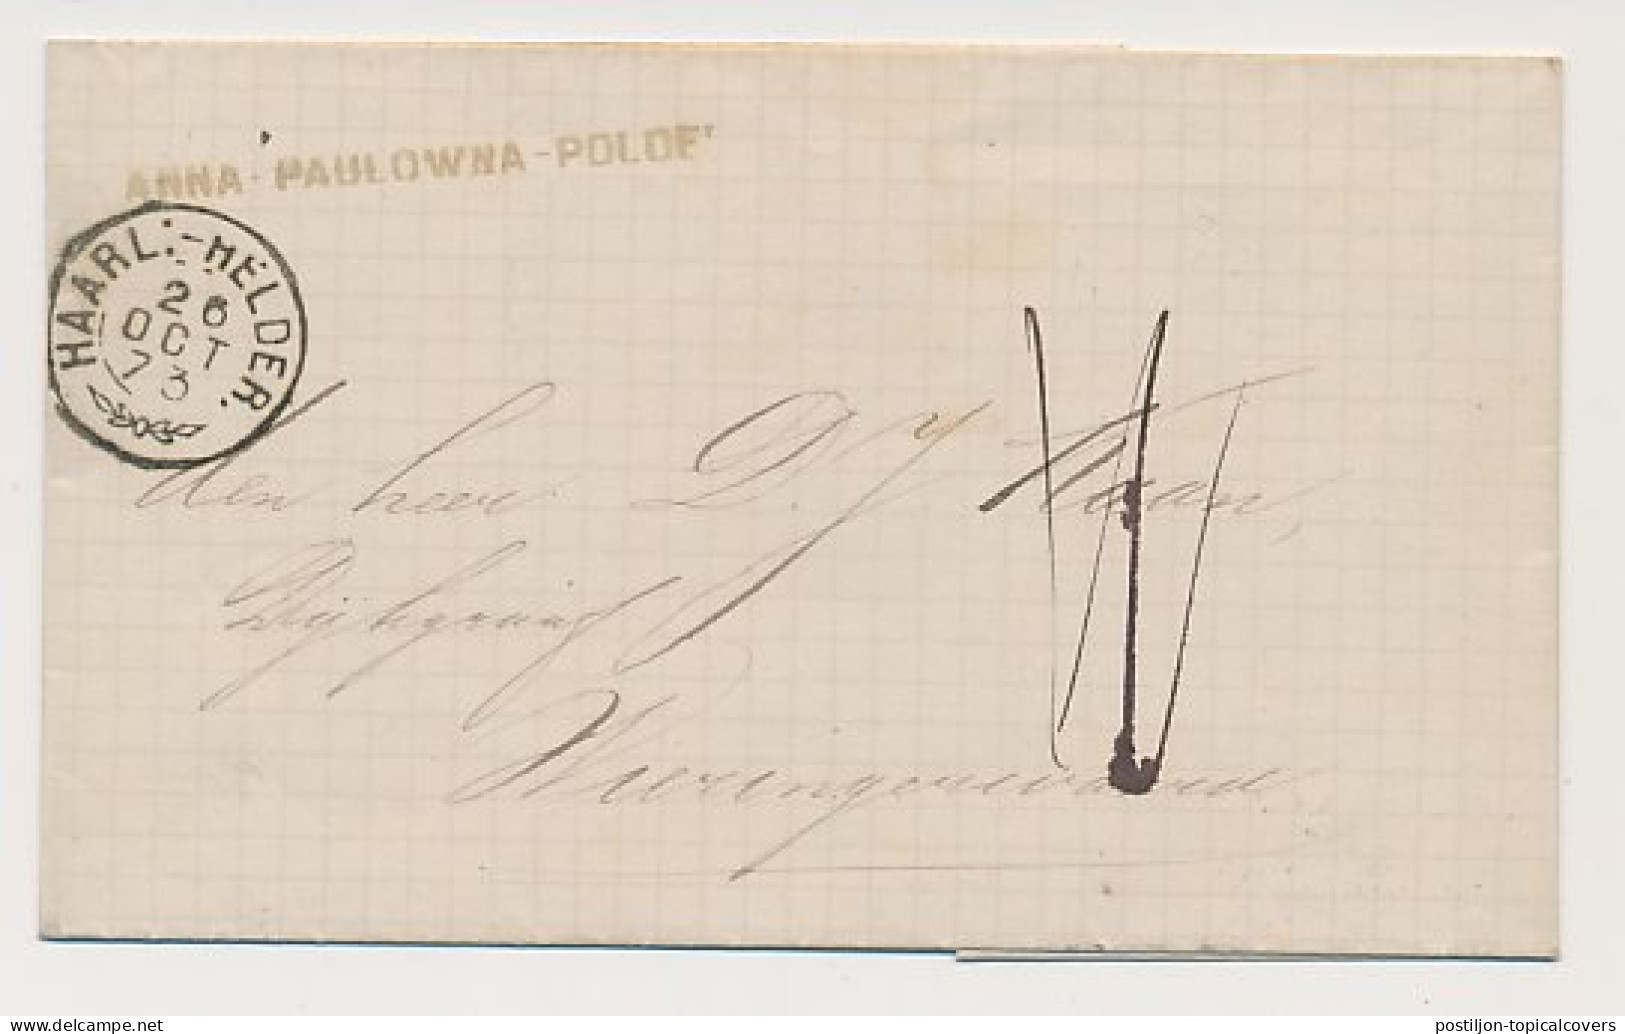 Anna Paulowna Polder Trein Takjestempel Haarlem - Helder 1873 - Briefe U. Dokumente